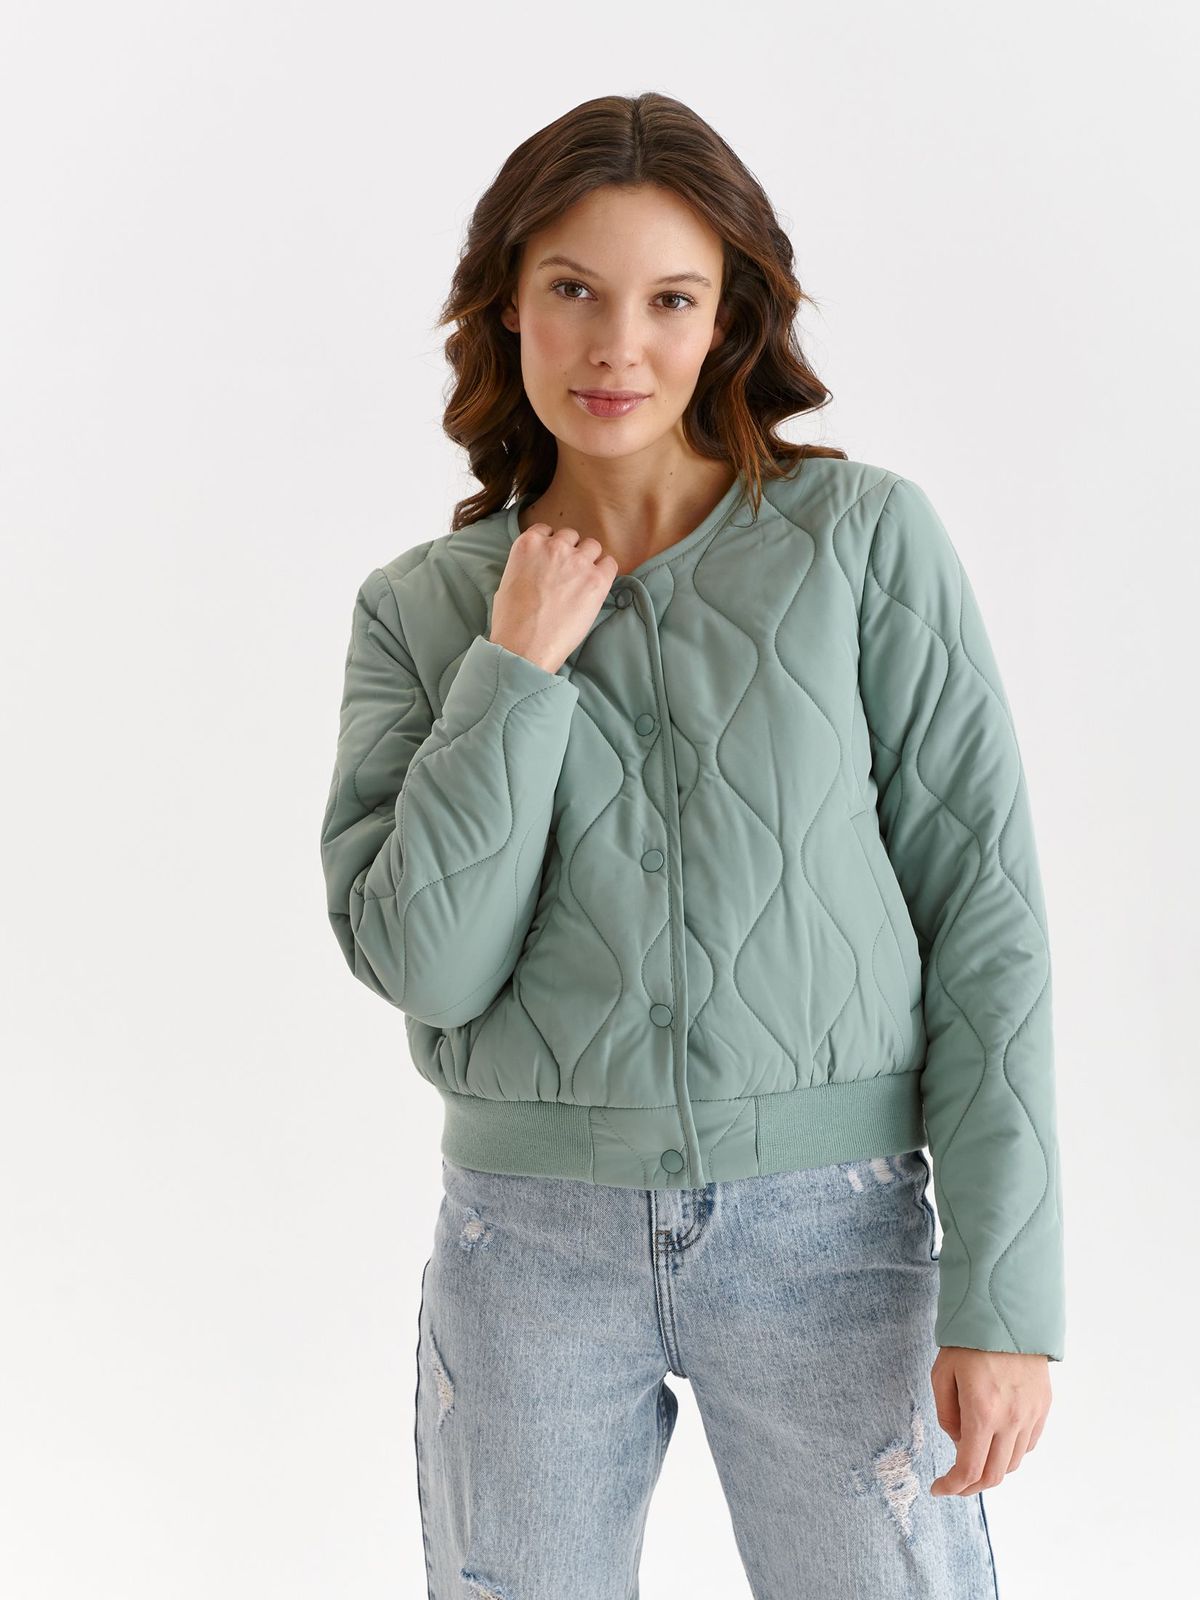 Lightgreen jacket from slicker short cut loose fit lateral pockets